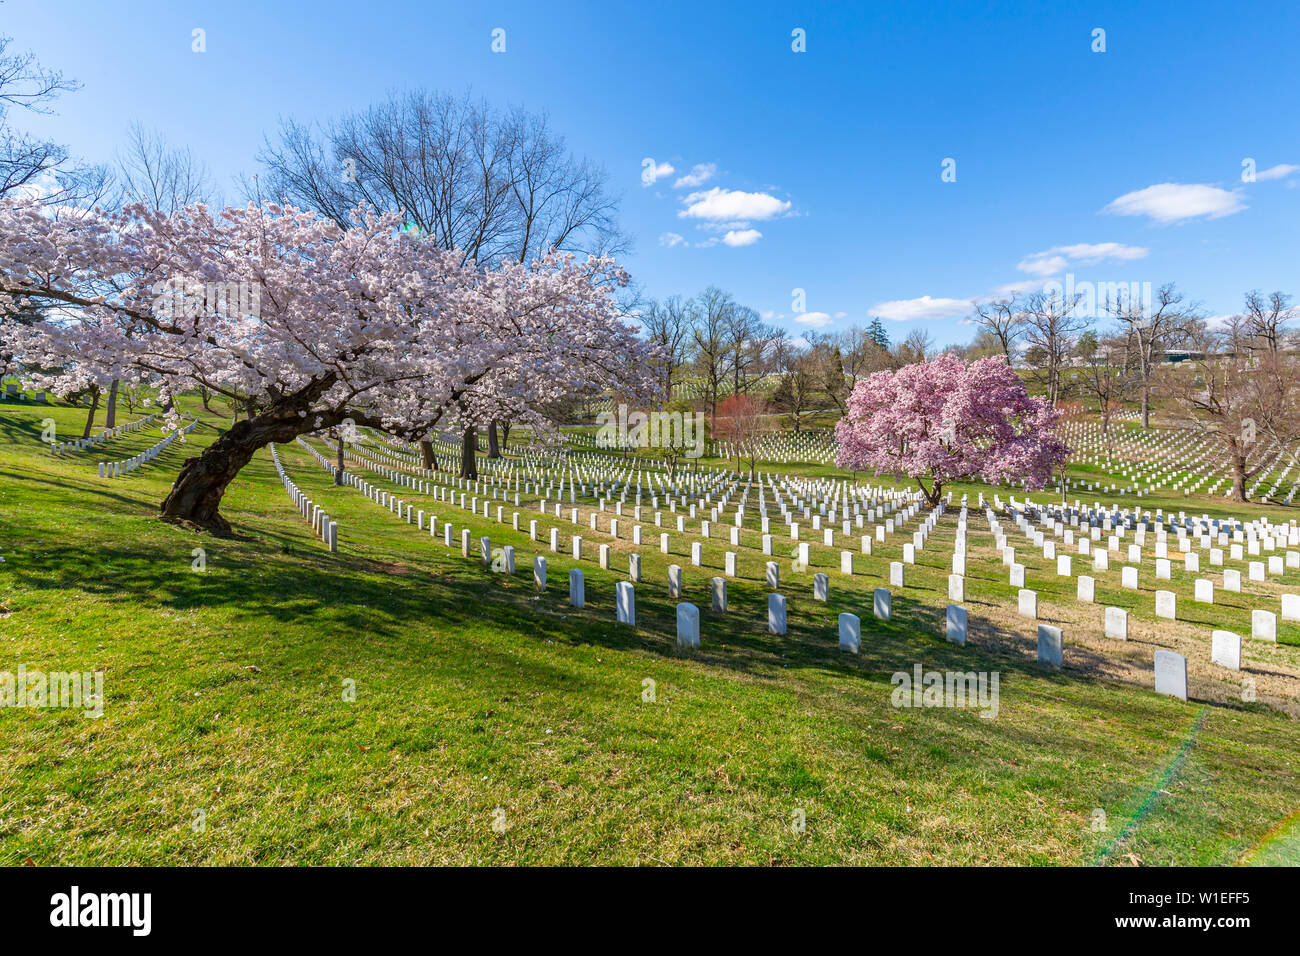 Blick auf die Grabsteine in Arlington National Cemetery im Frühling, Washington D.C., Vereinigte Staaten von Amerika, Nordamerika Stockfoto